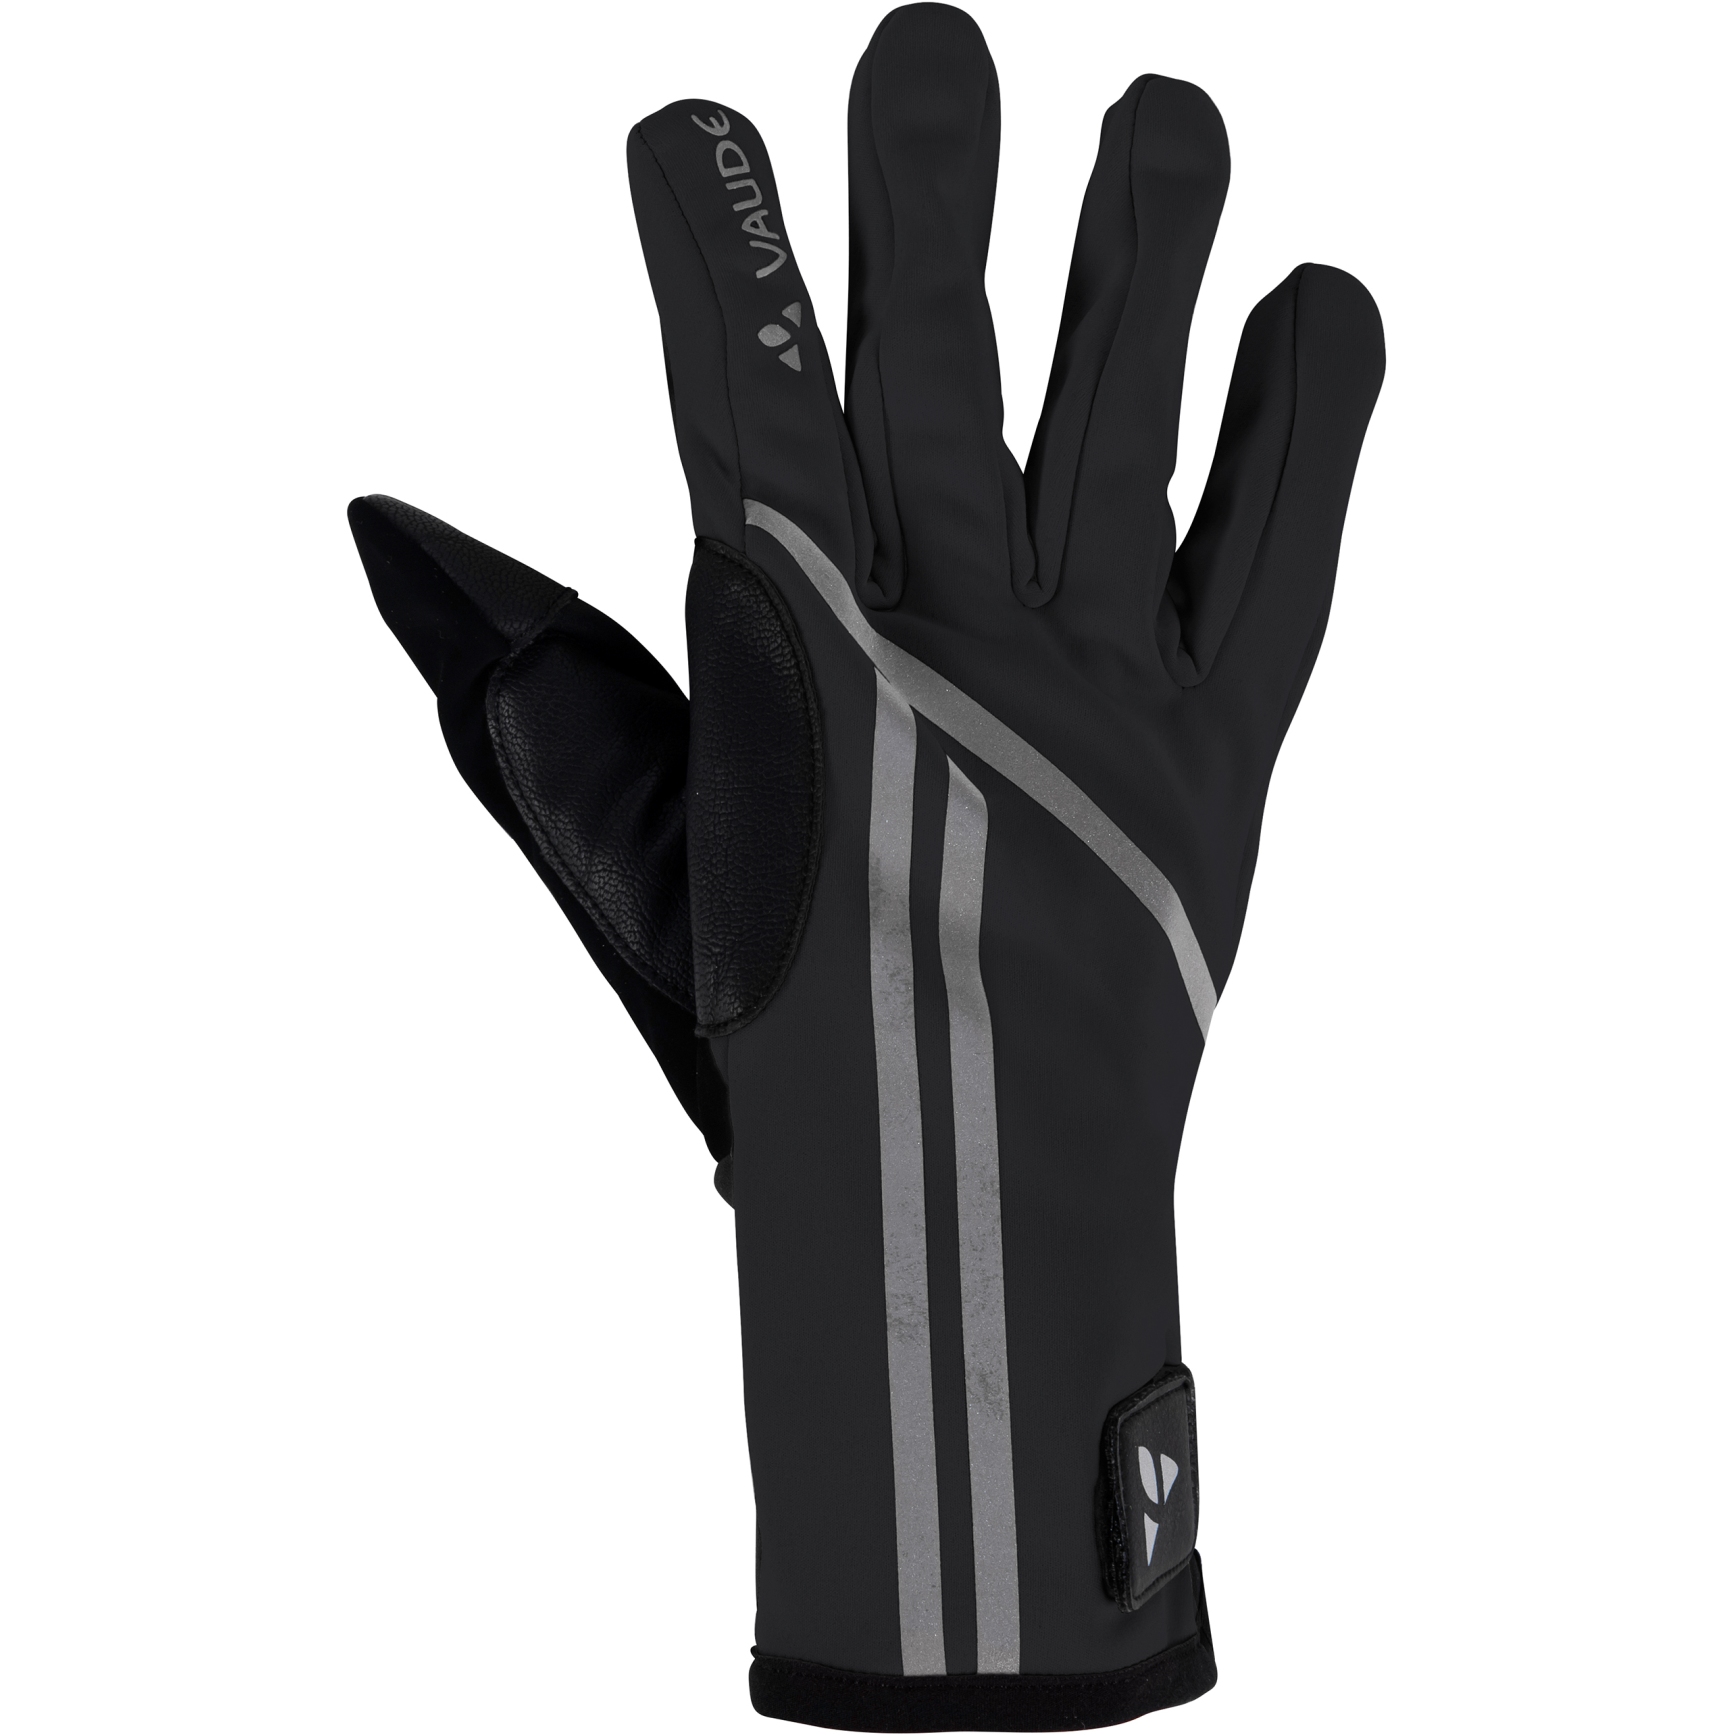 Produktbild von Vaude Posta Warm Handschuhe - schwarz